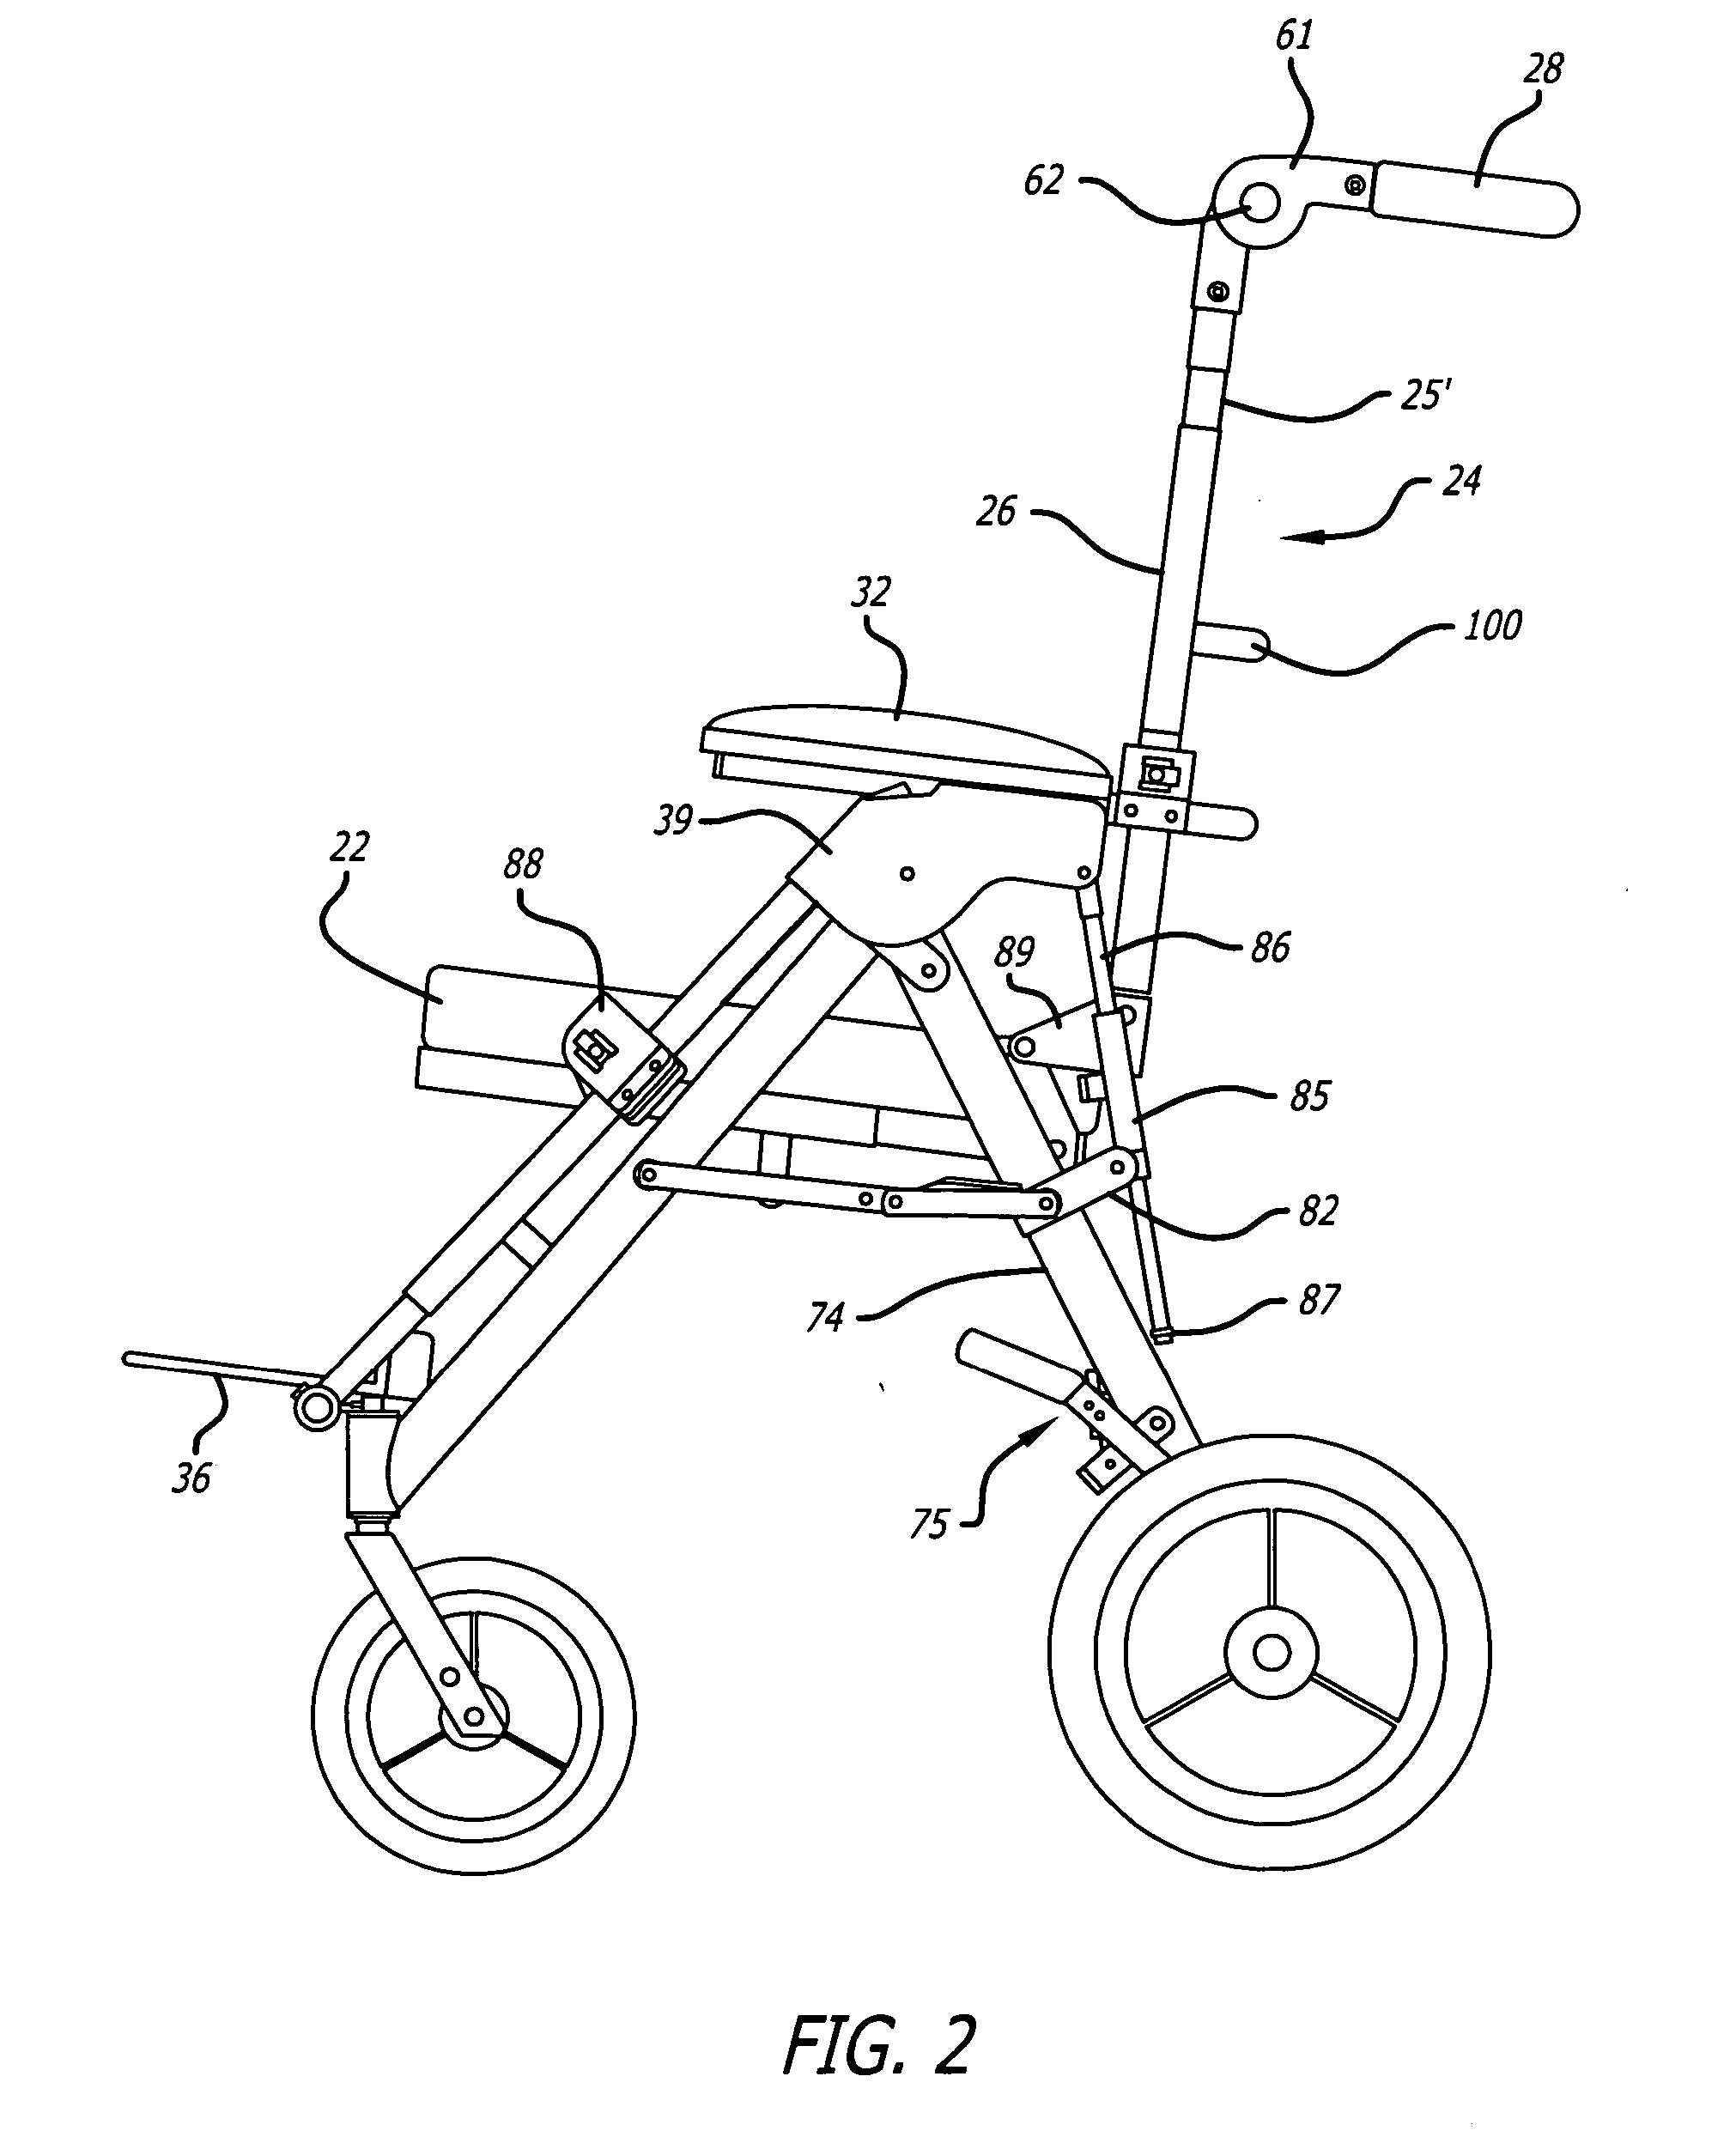 Center-of-gravity tilt-in-space wheelchair